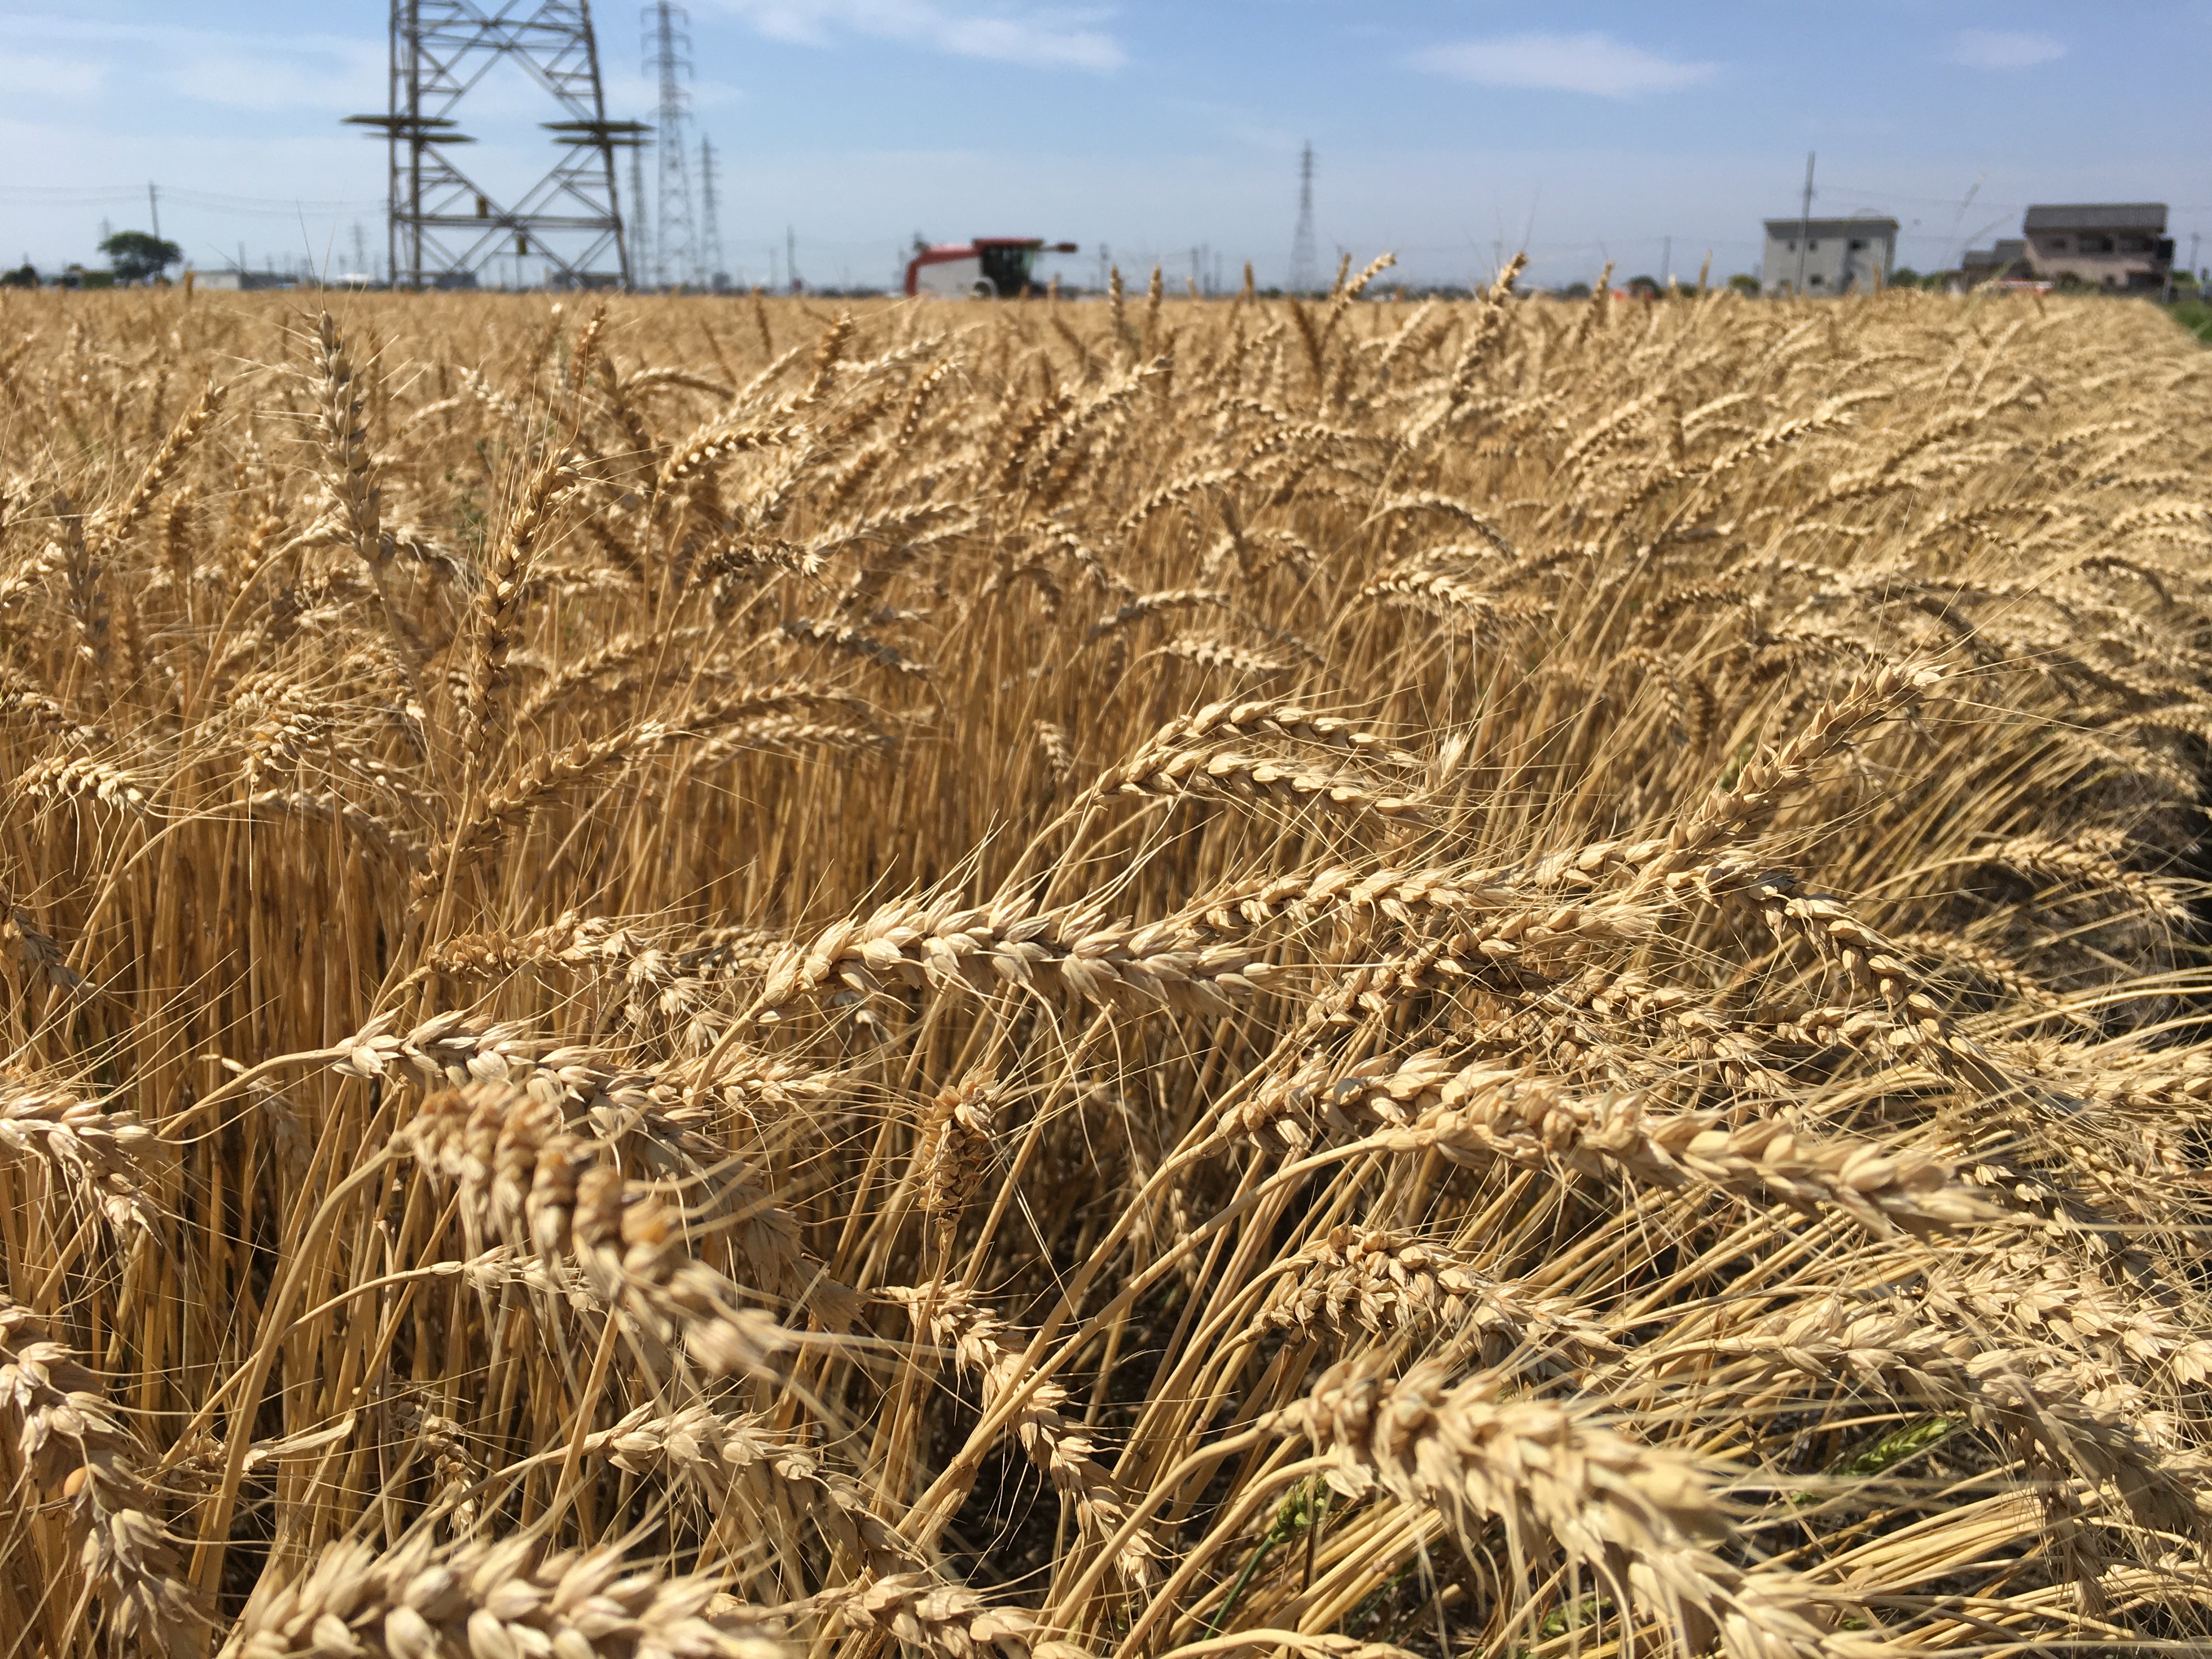 「小麦」の収穫時期なんです。